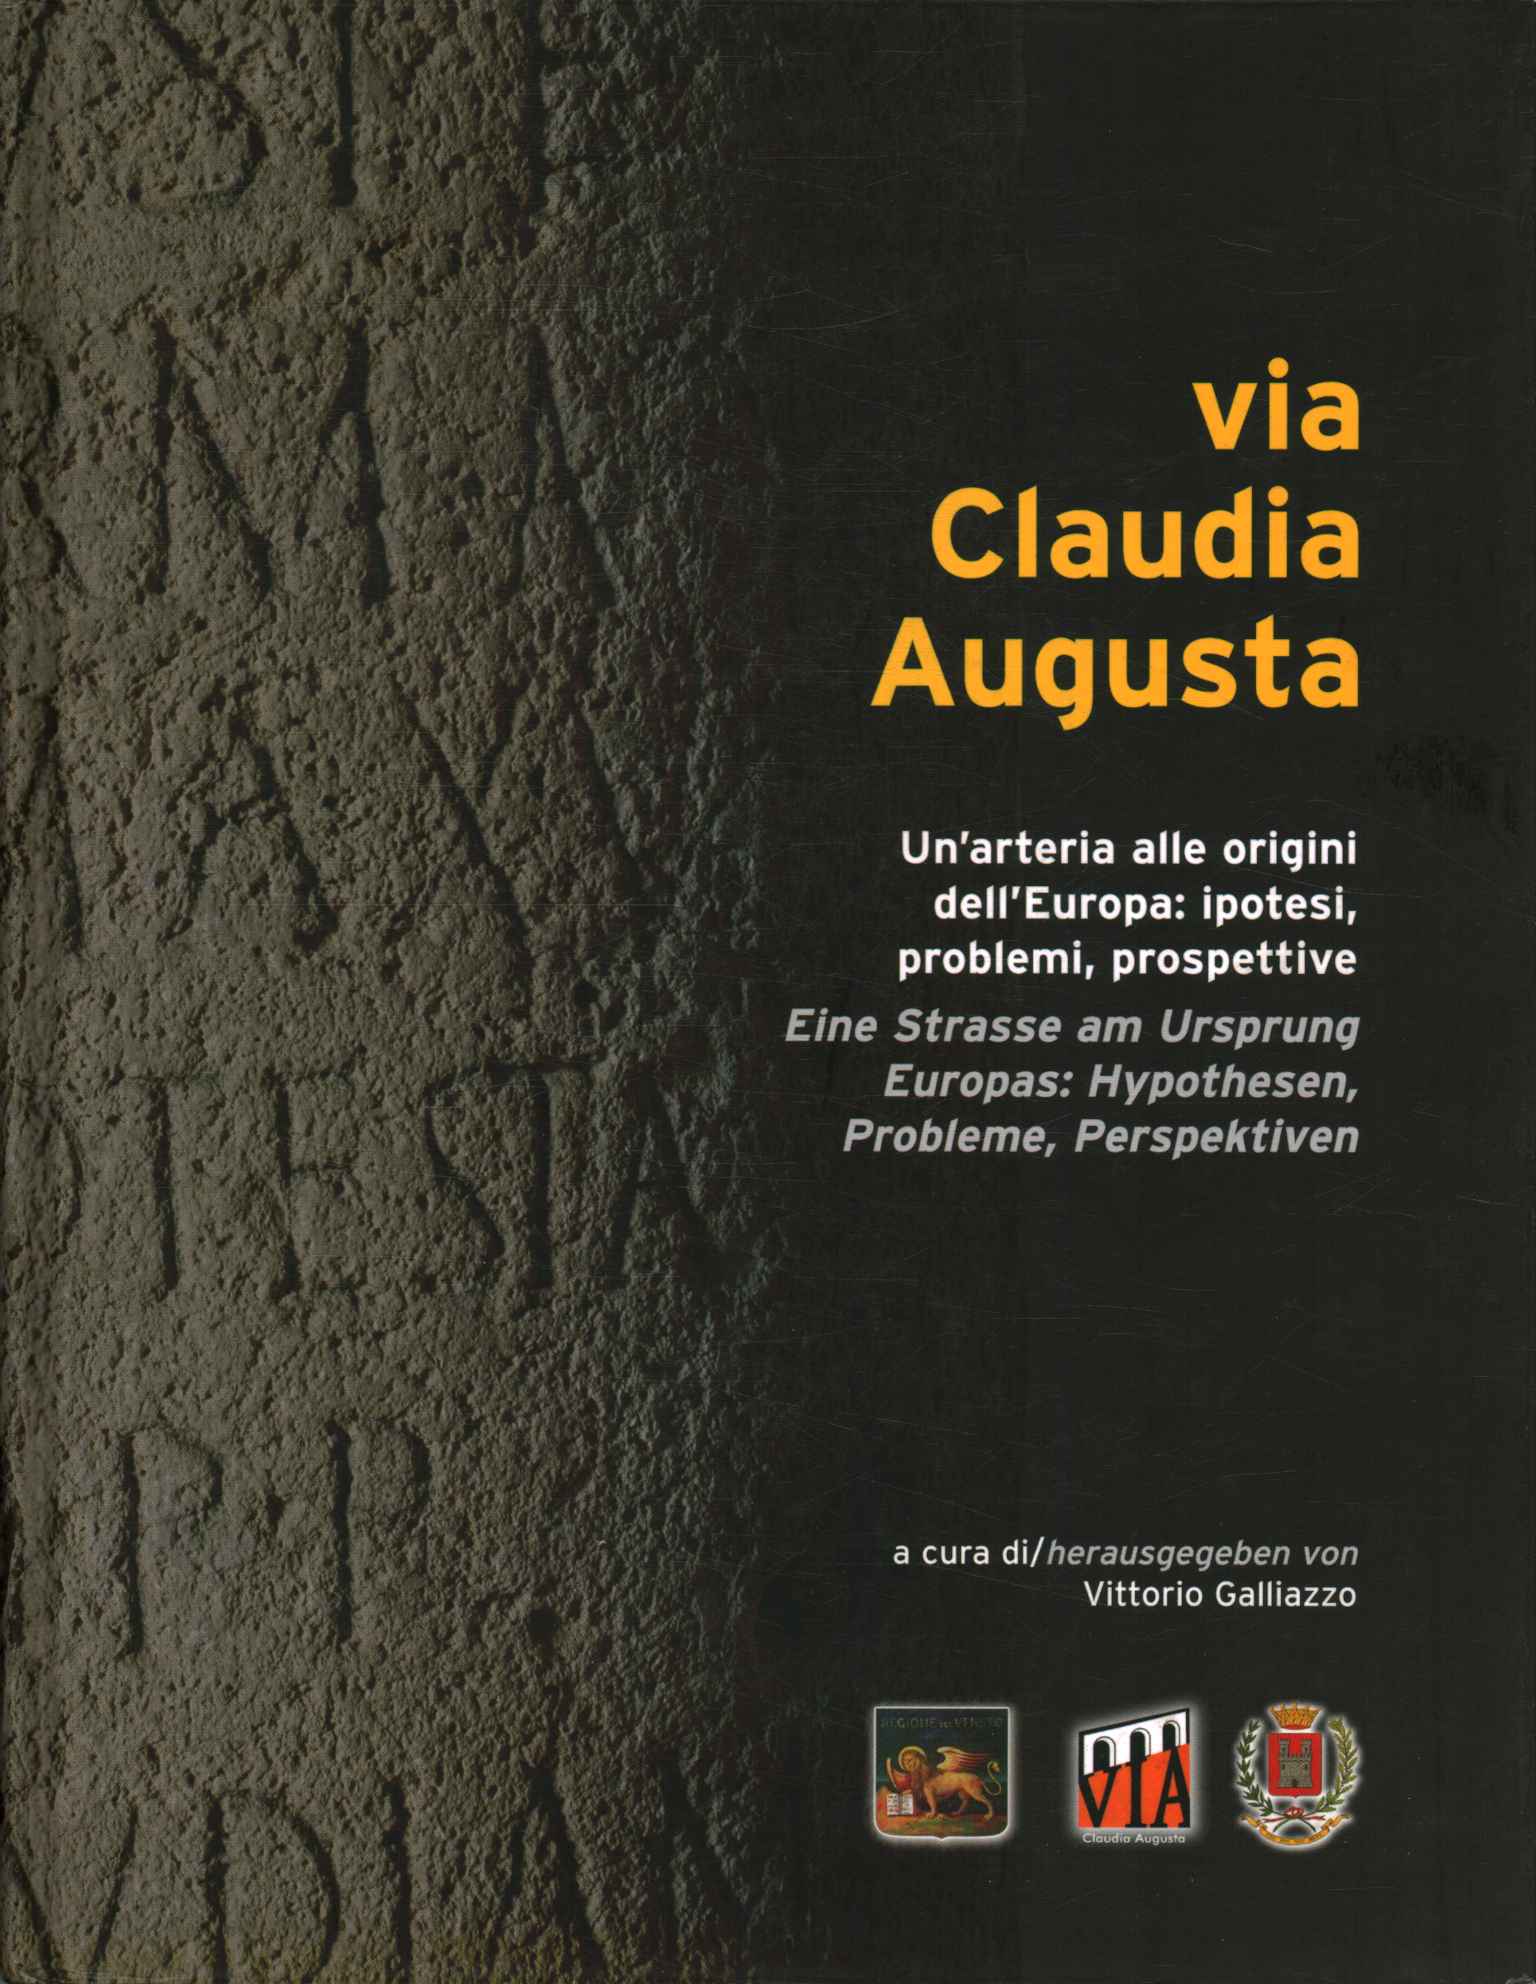 Vía Claudia Augusta